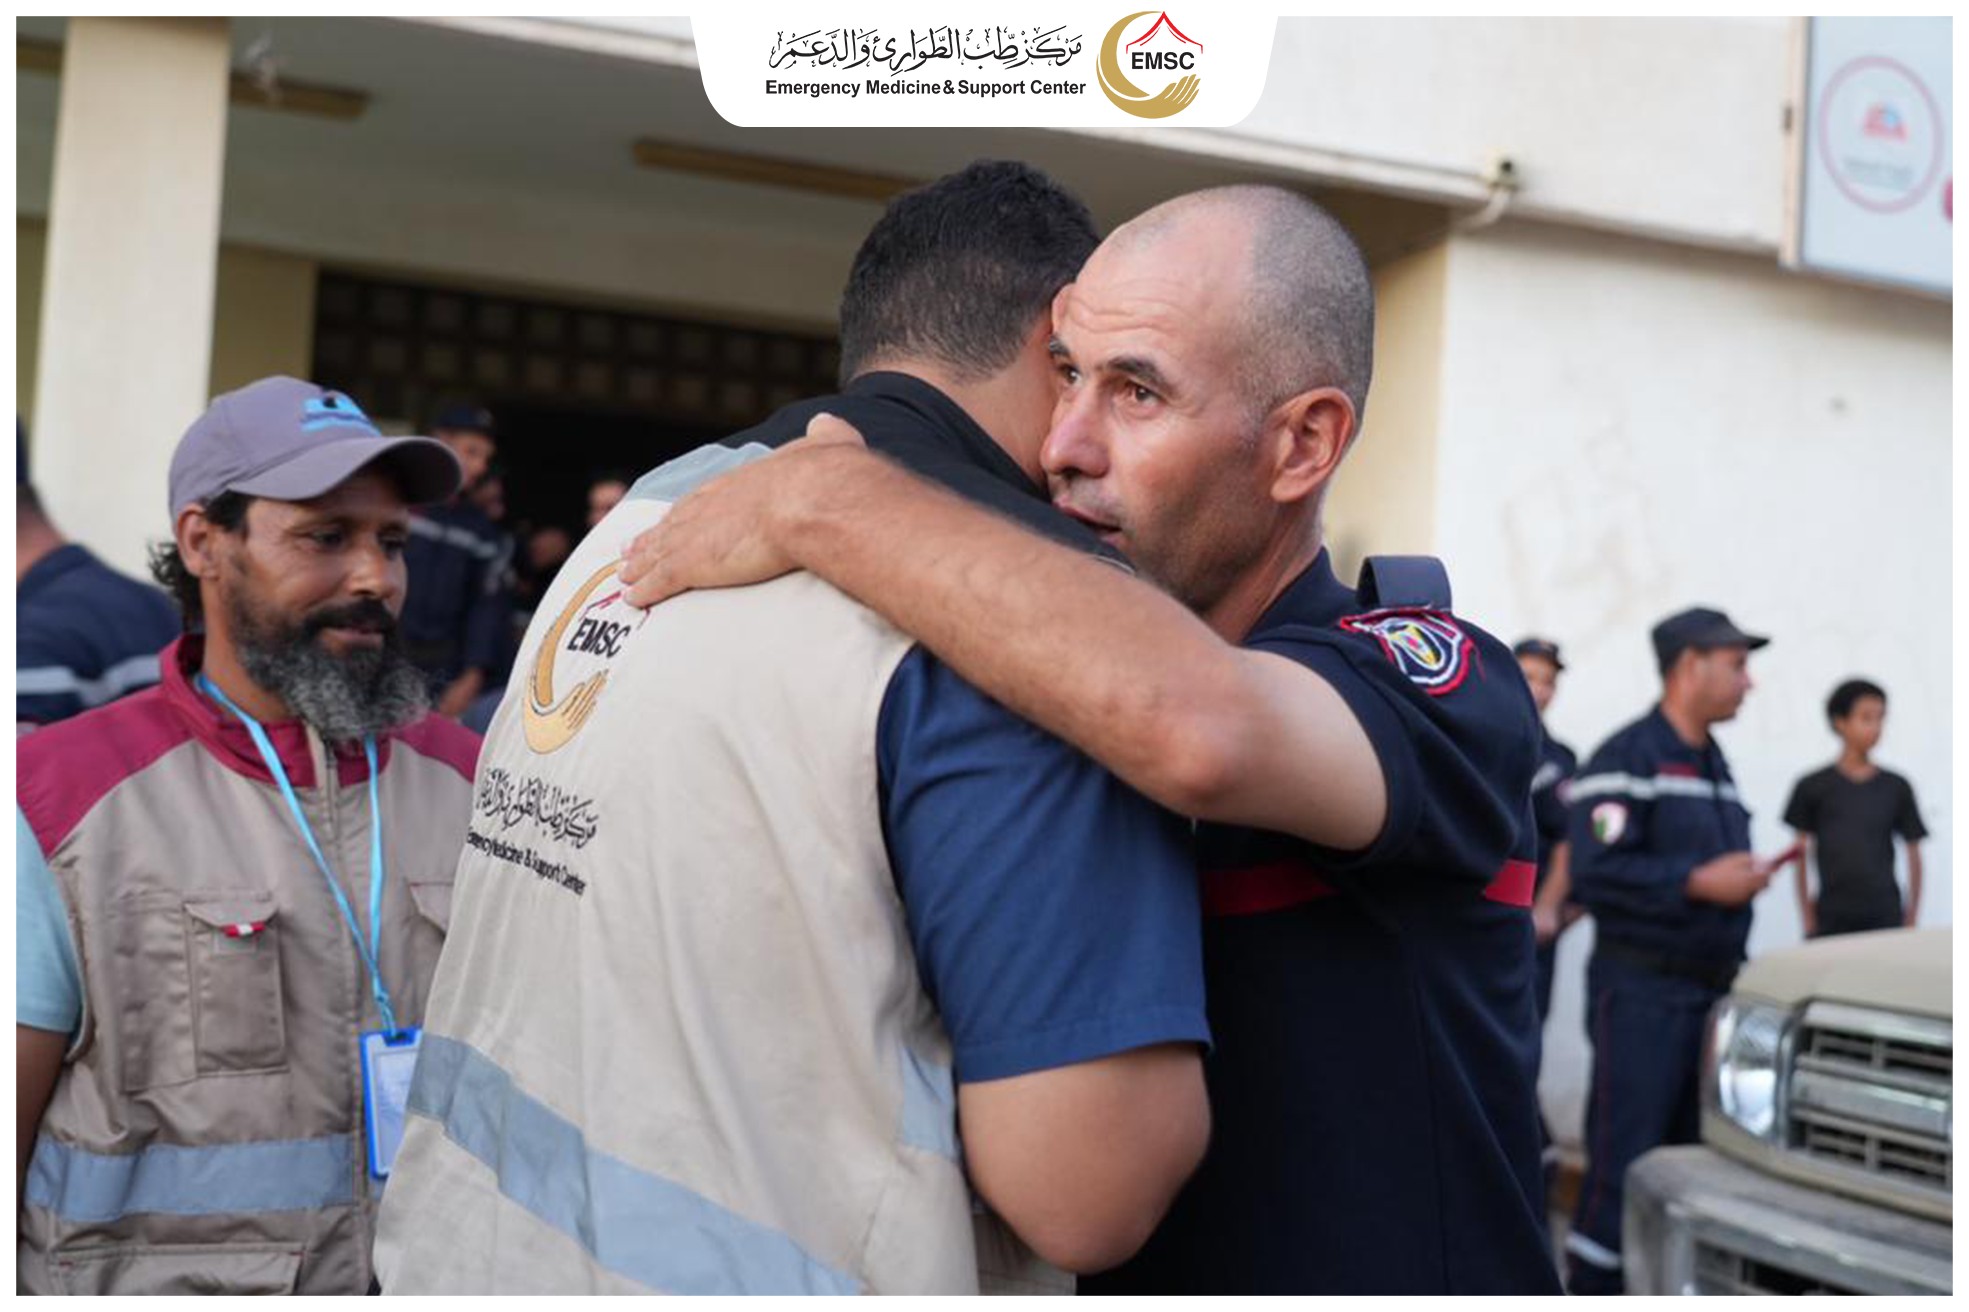 فرق مركز طب الطوارئ تودع فريق البحث والإنقاذ الجزائري بعد انتهاء مهمته الإنسانية في شرق ليبيا